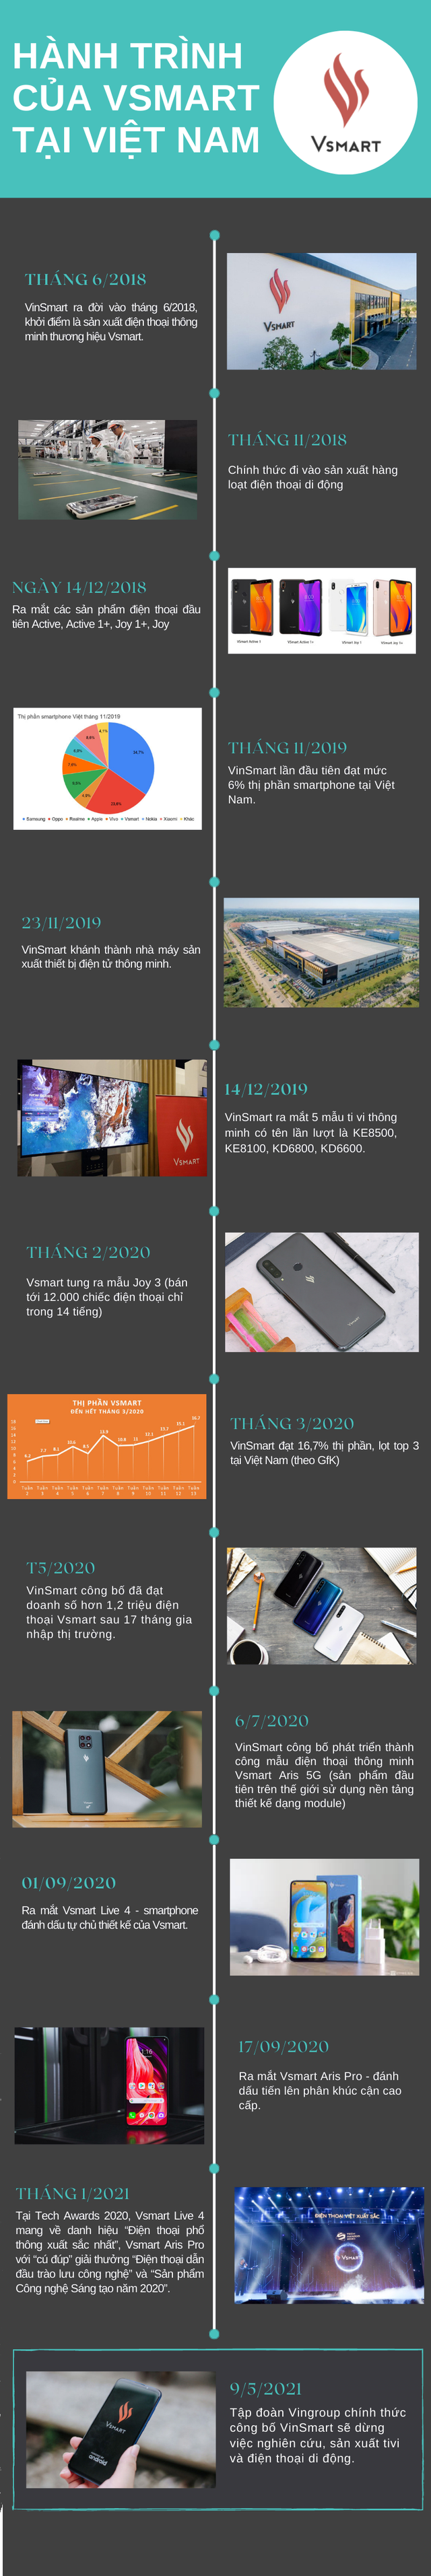 Nhìn lại những dấu mốc của Vsmart tại thị trường Việt Nam - Ảnh 1.